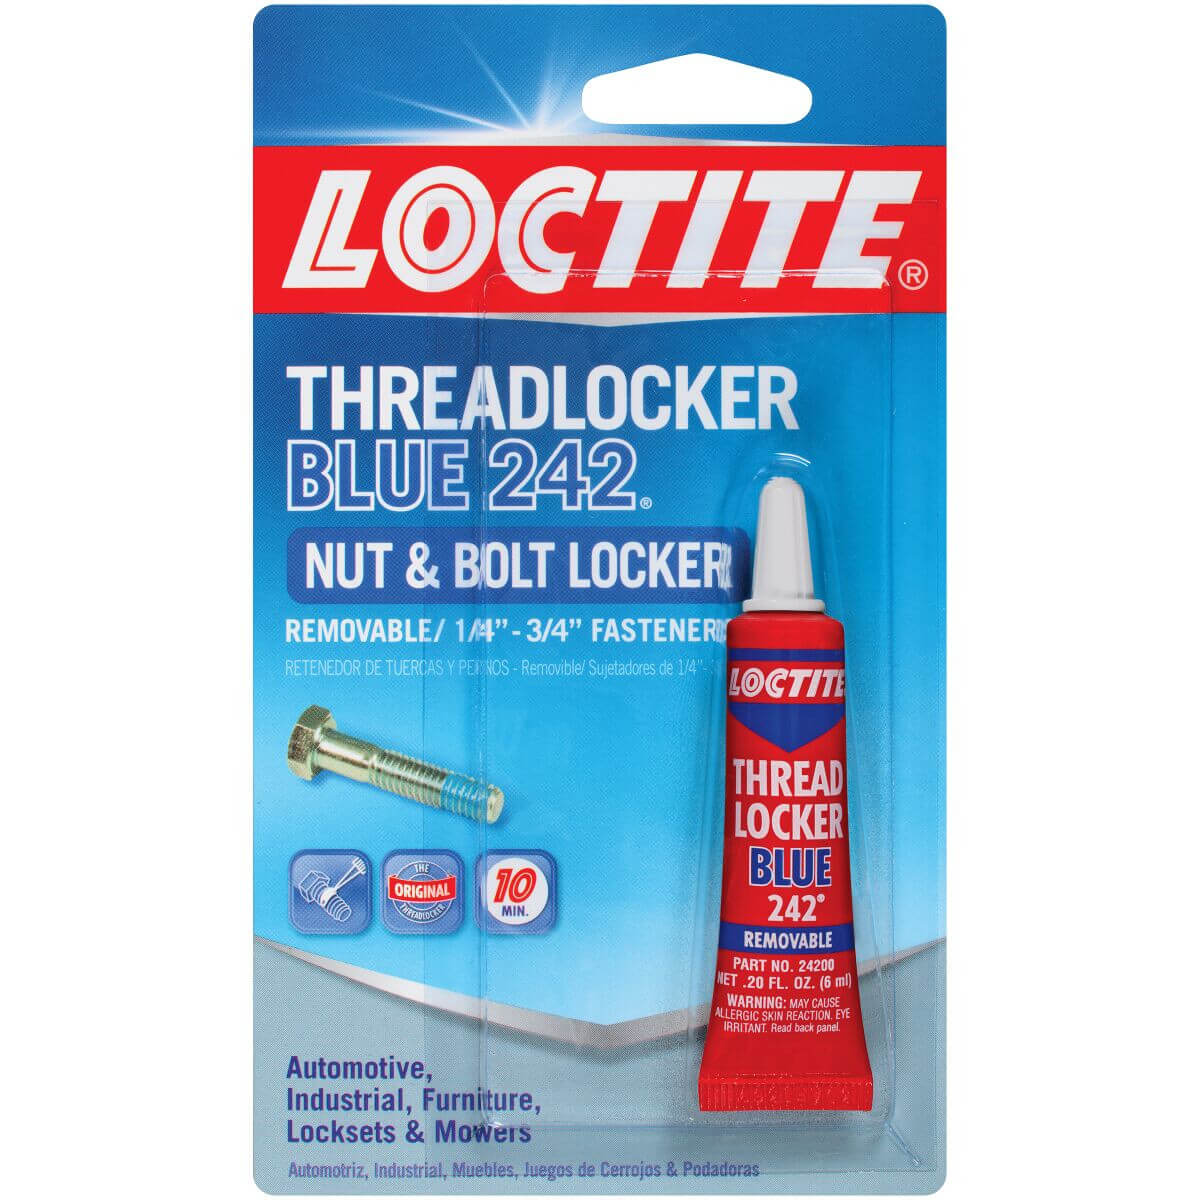 Loctite Threadlocker Blue 242 Nut & Bolt Locker